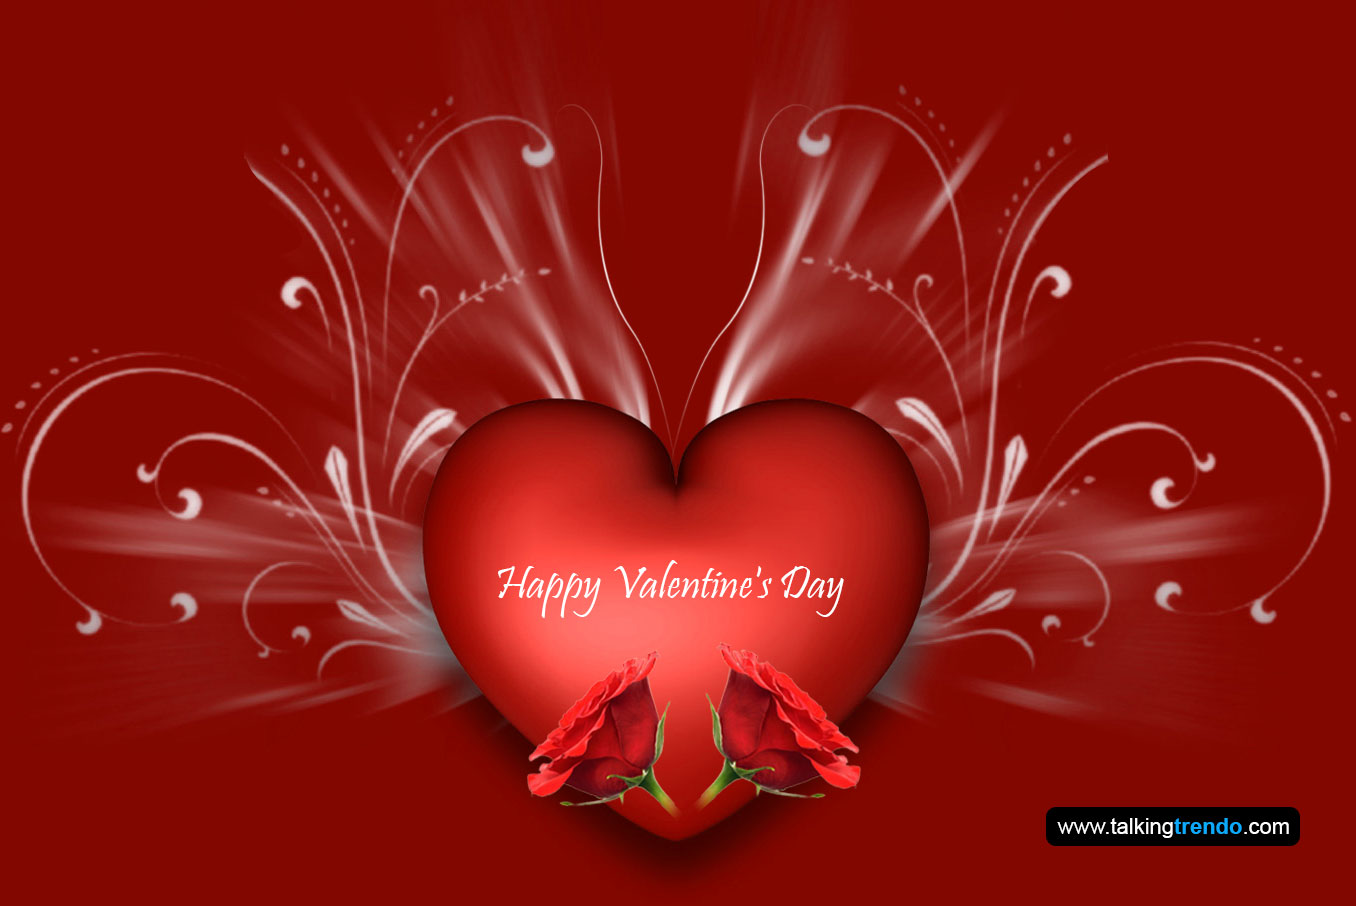 14 febbraio carta da parati di san valentino,cuore,rosso,amore,san valentino,testo